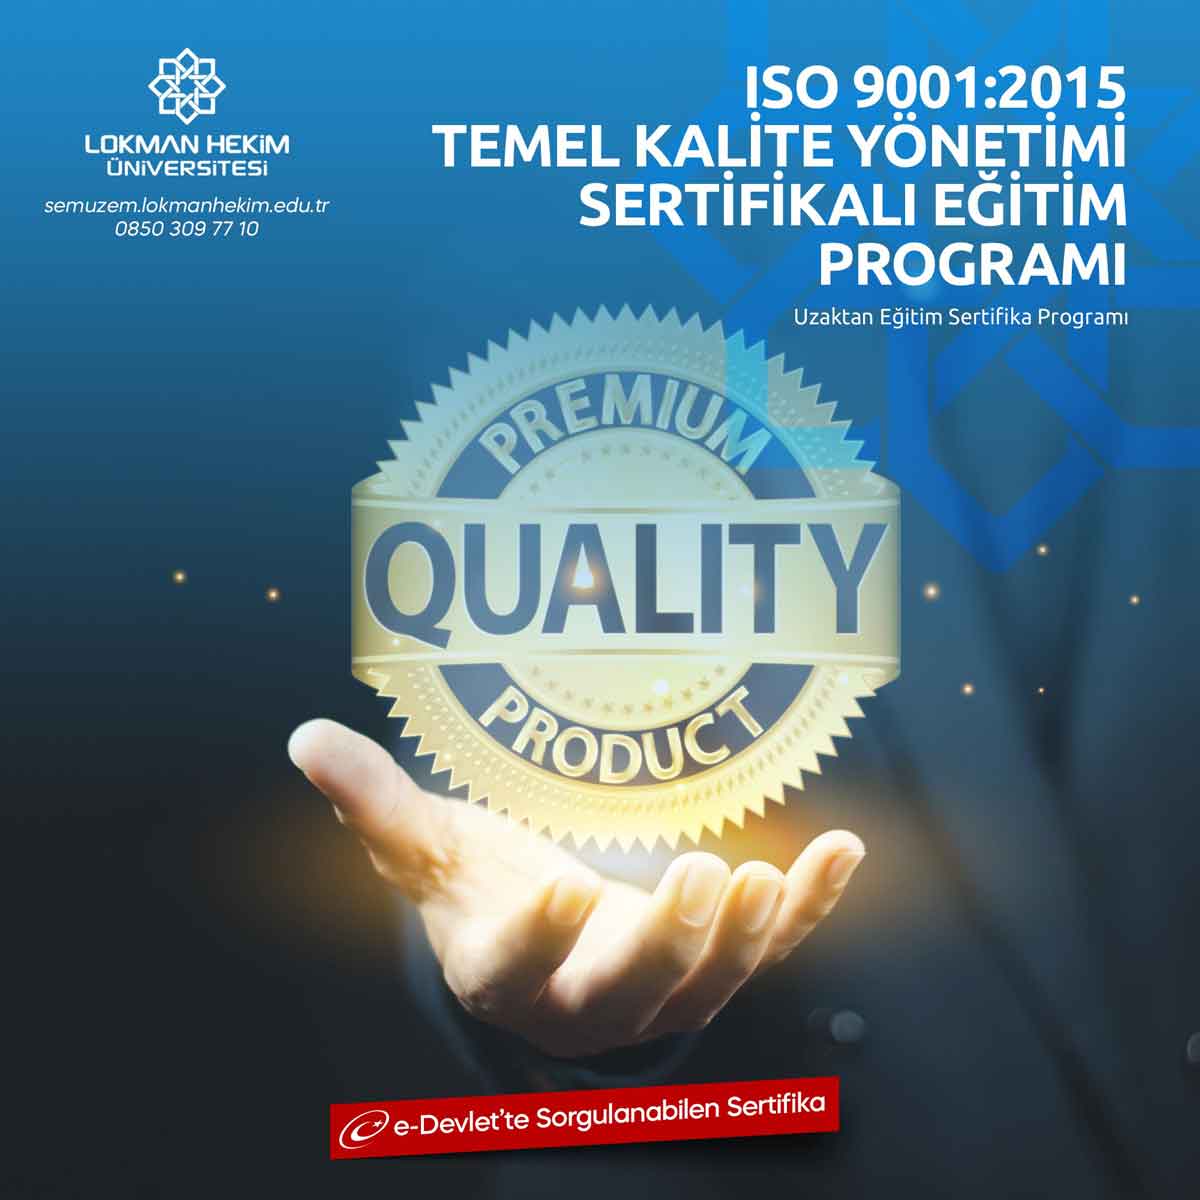 ISO 9001:2015 Temel Kalite Yönetimi Eğitimi Nedir